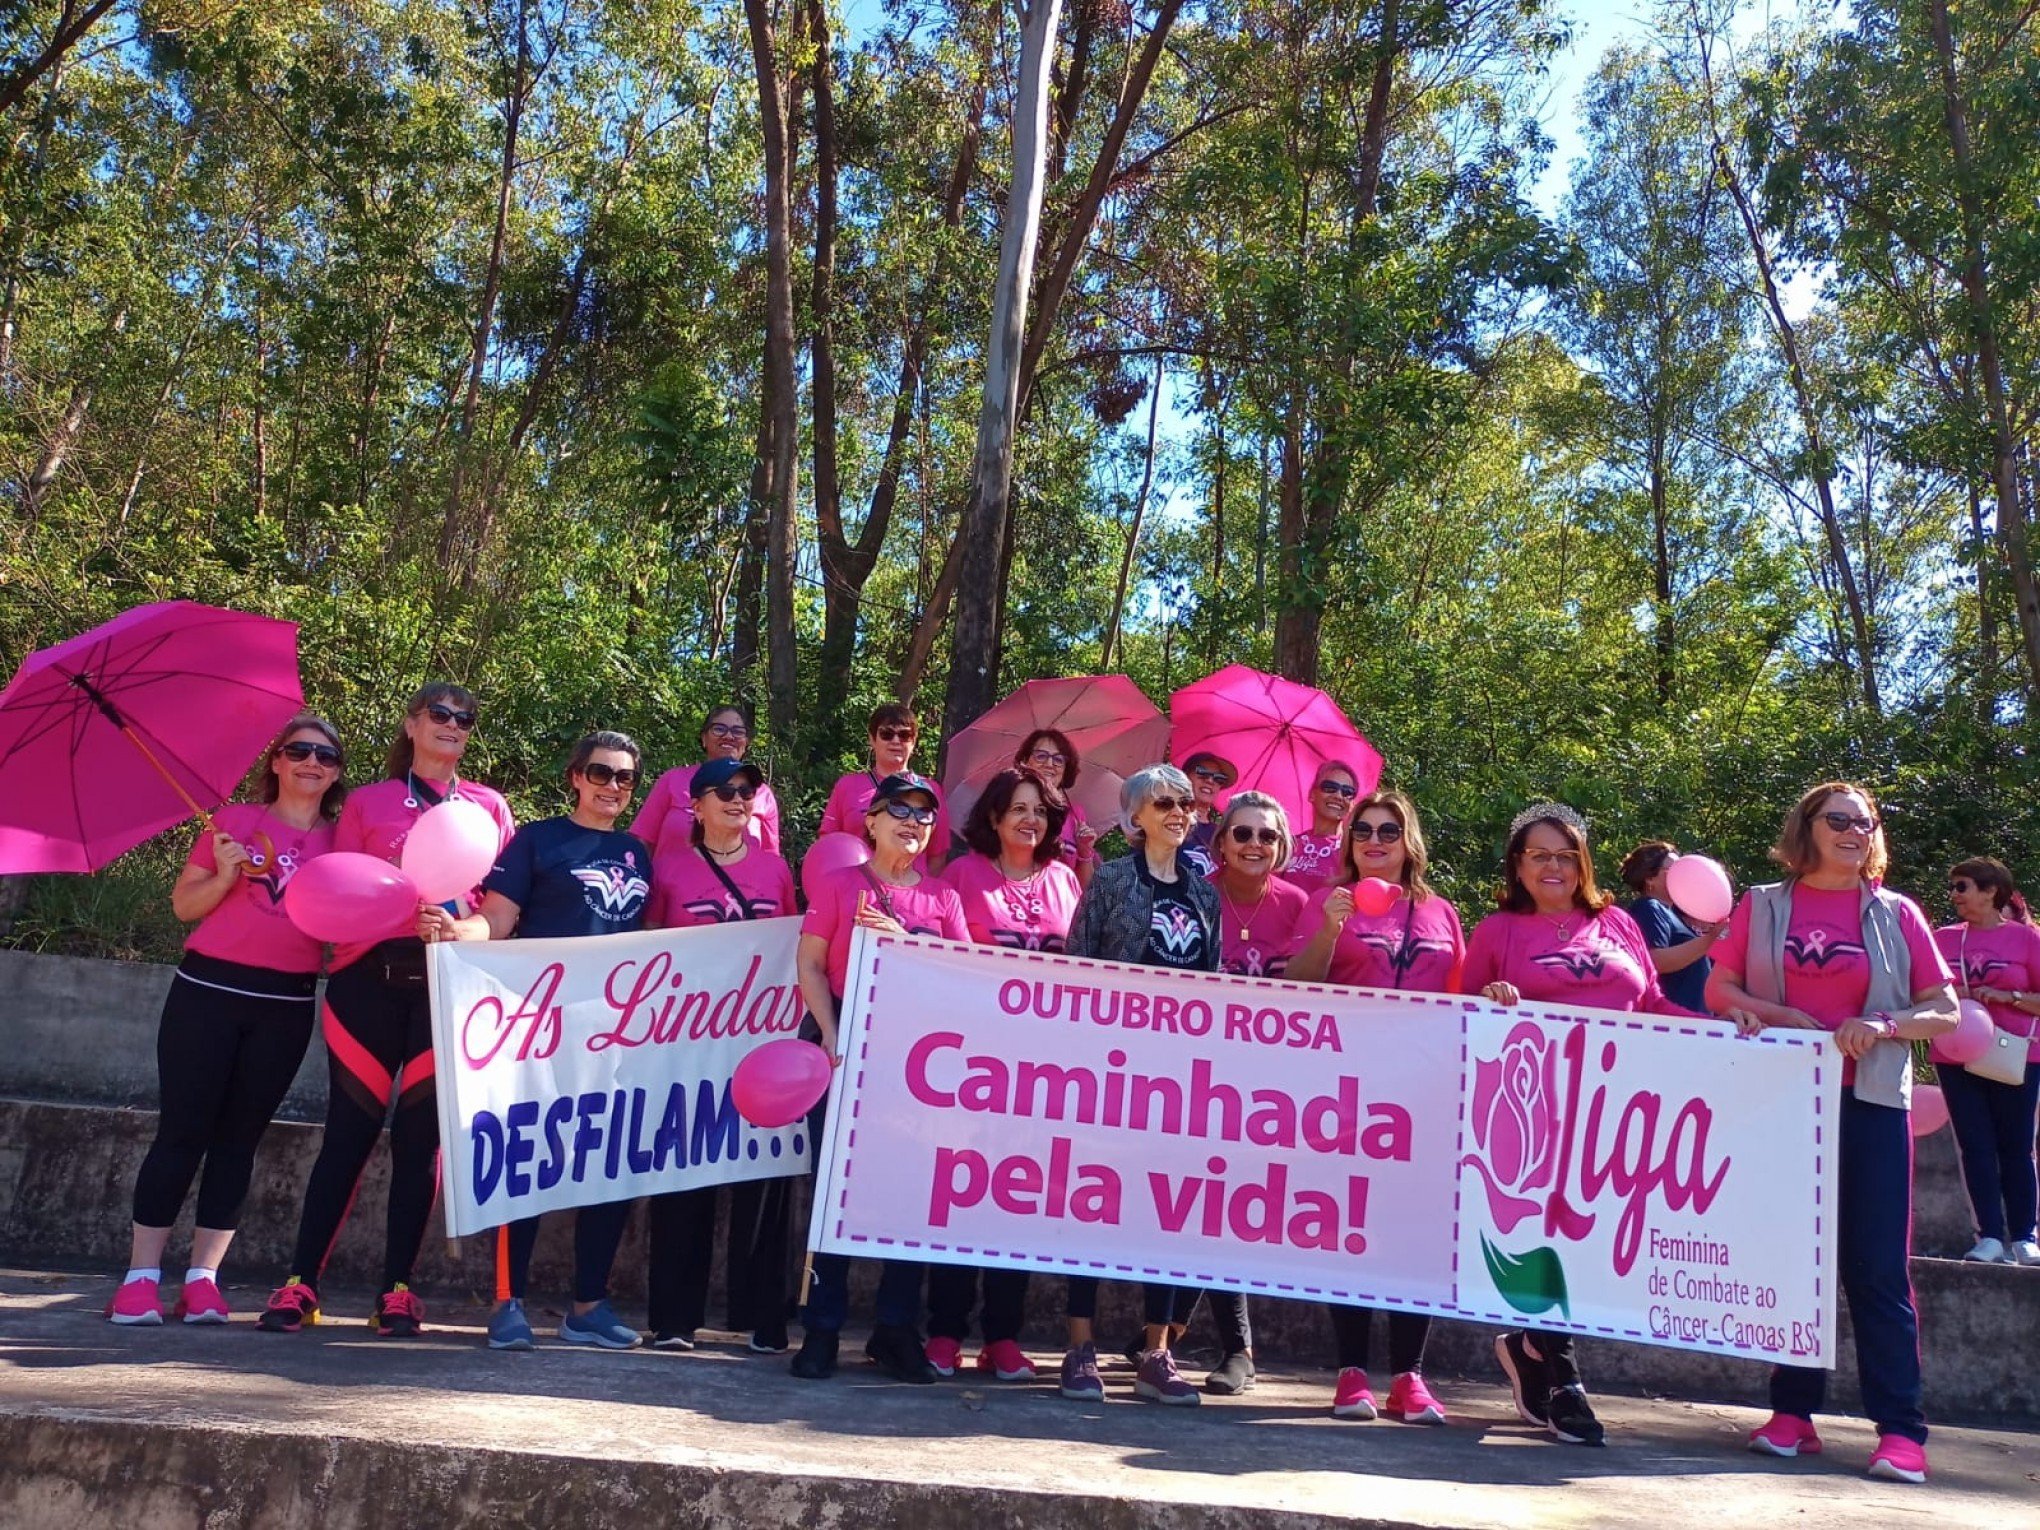 Liga Feminina de Combate ao Câncer completa 38 anos em Canoas